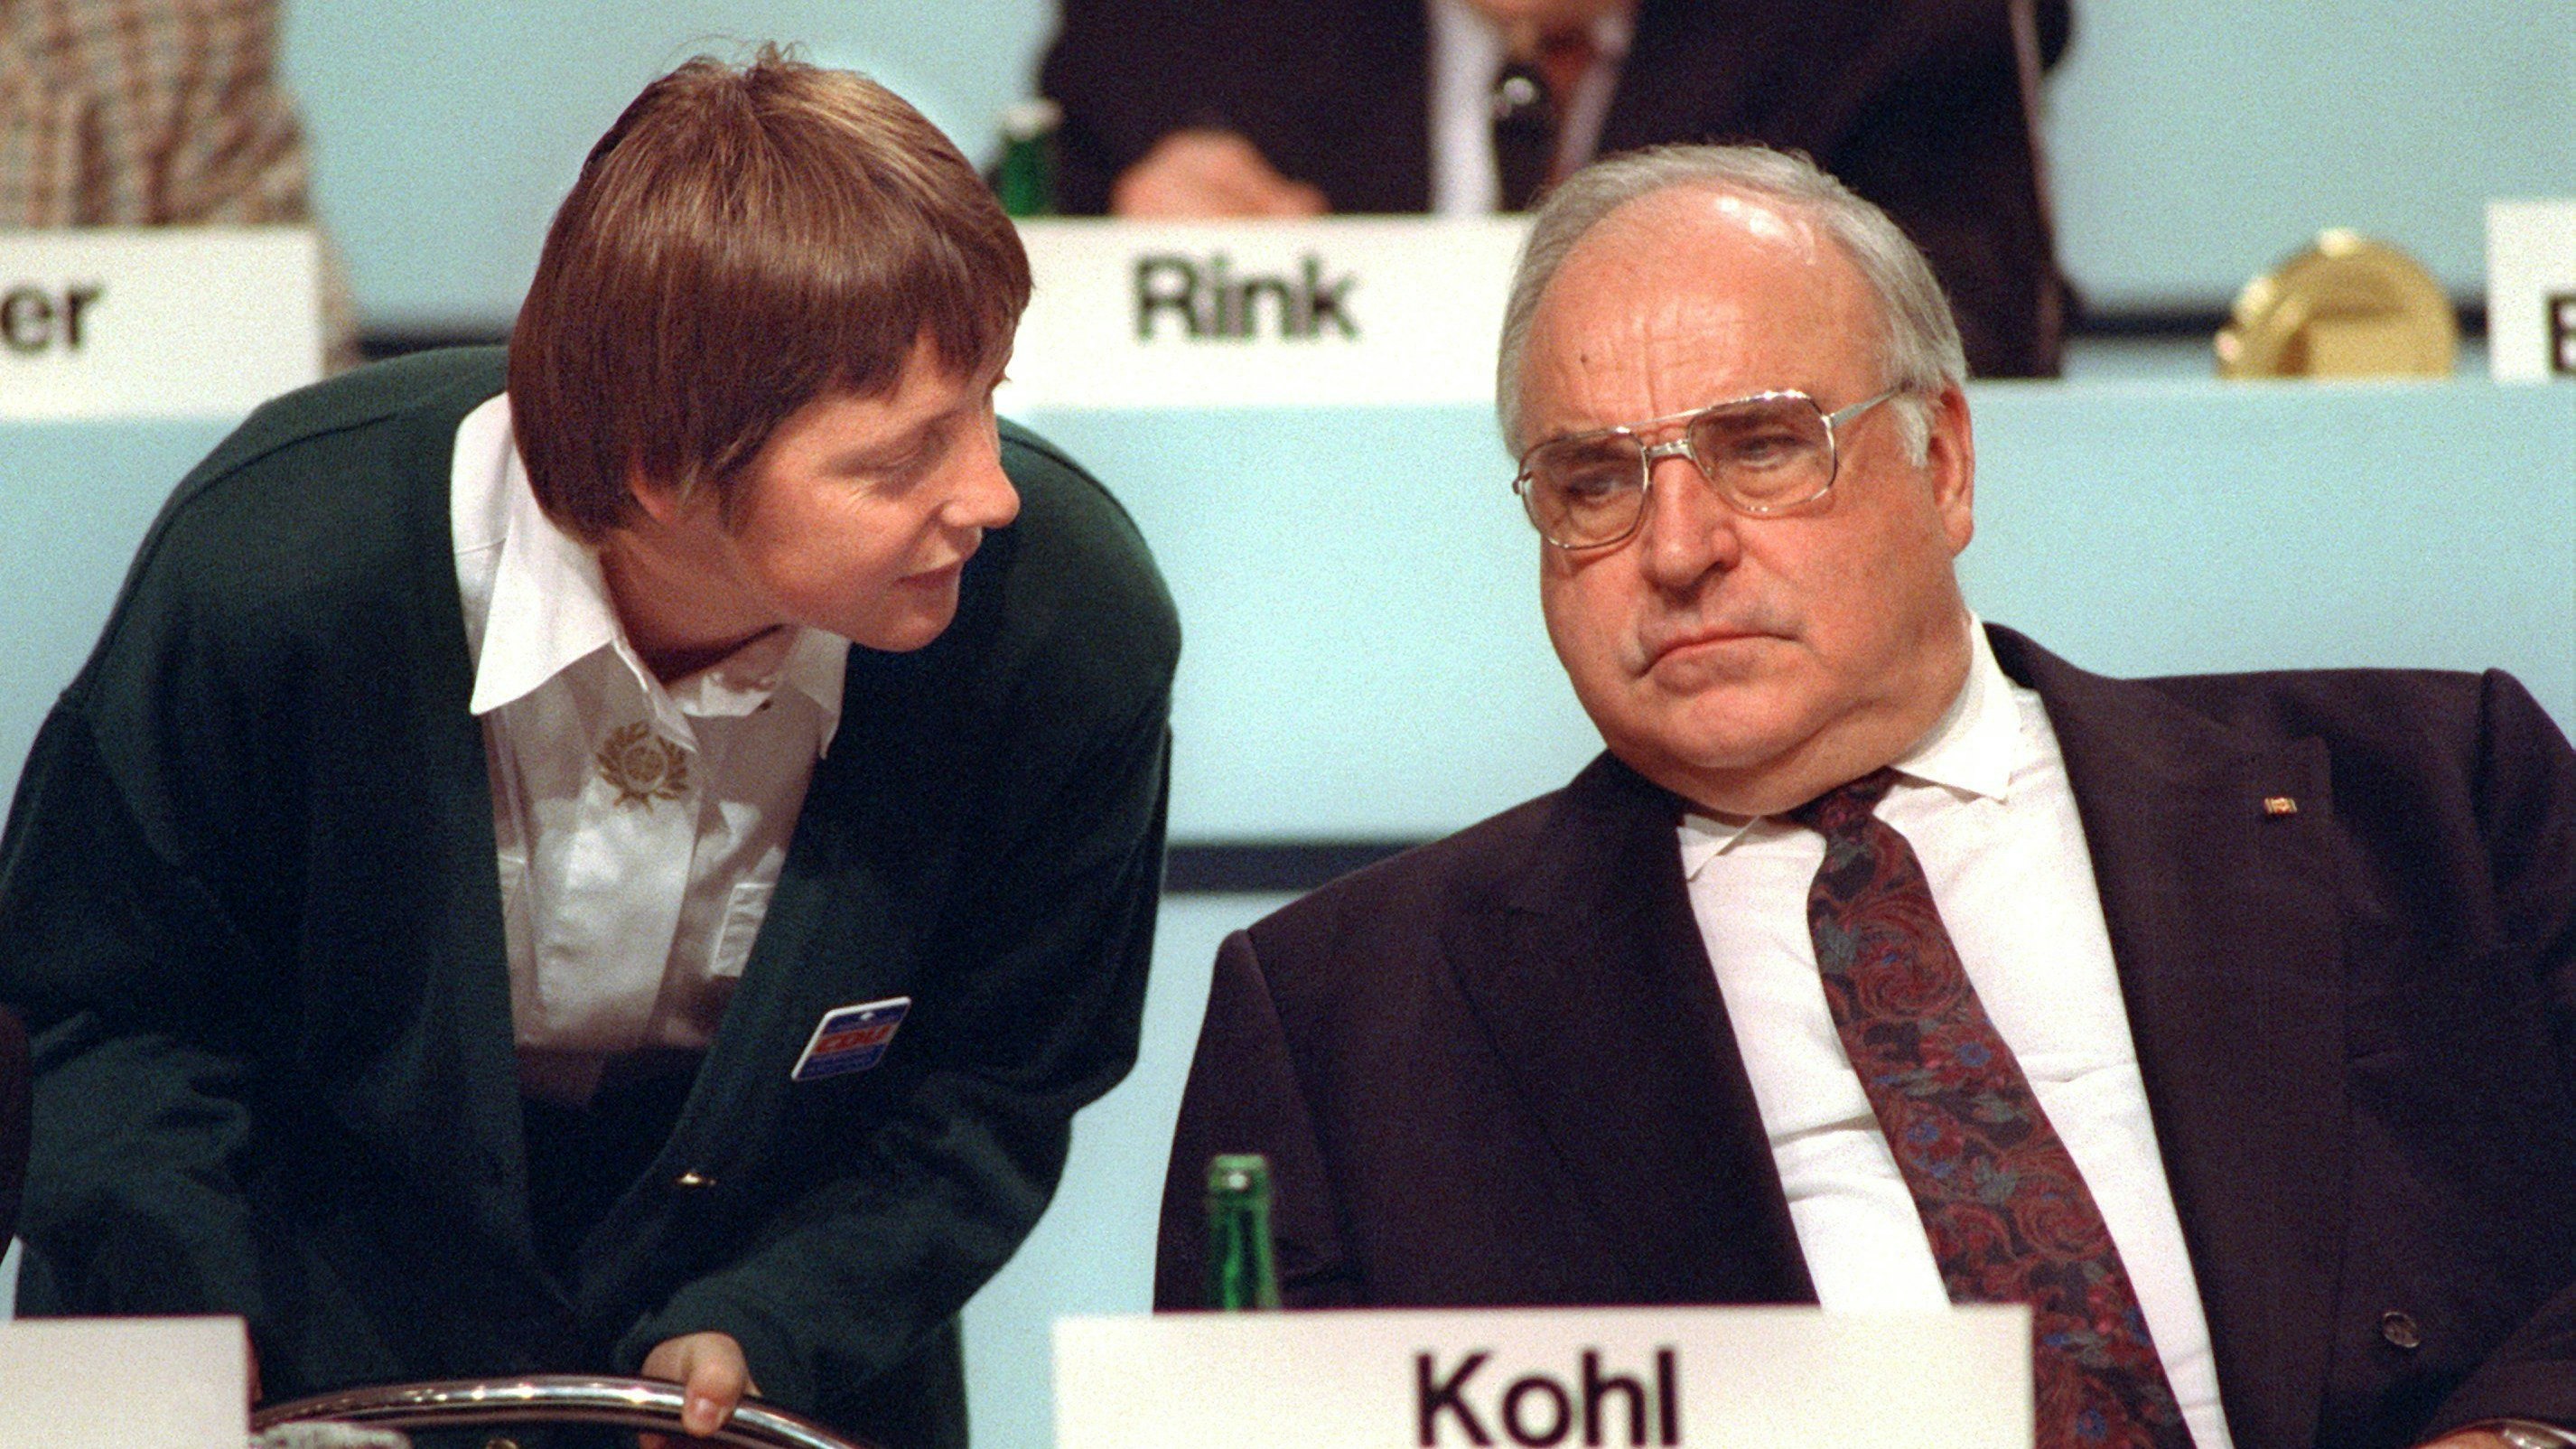 CDU-Parteitag 1991: Angela Merkel galt immer als "Erfindung" von Langzeitkanzler Helmut Kohl